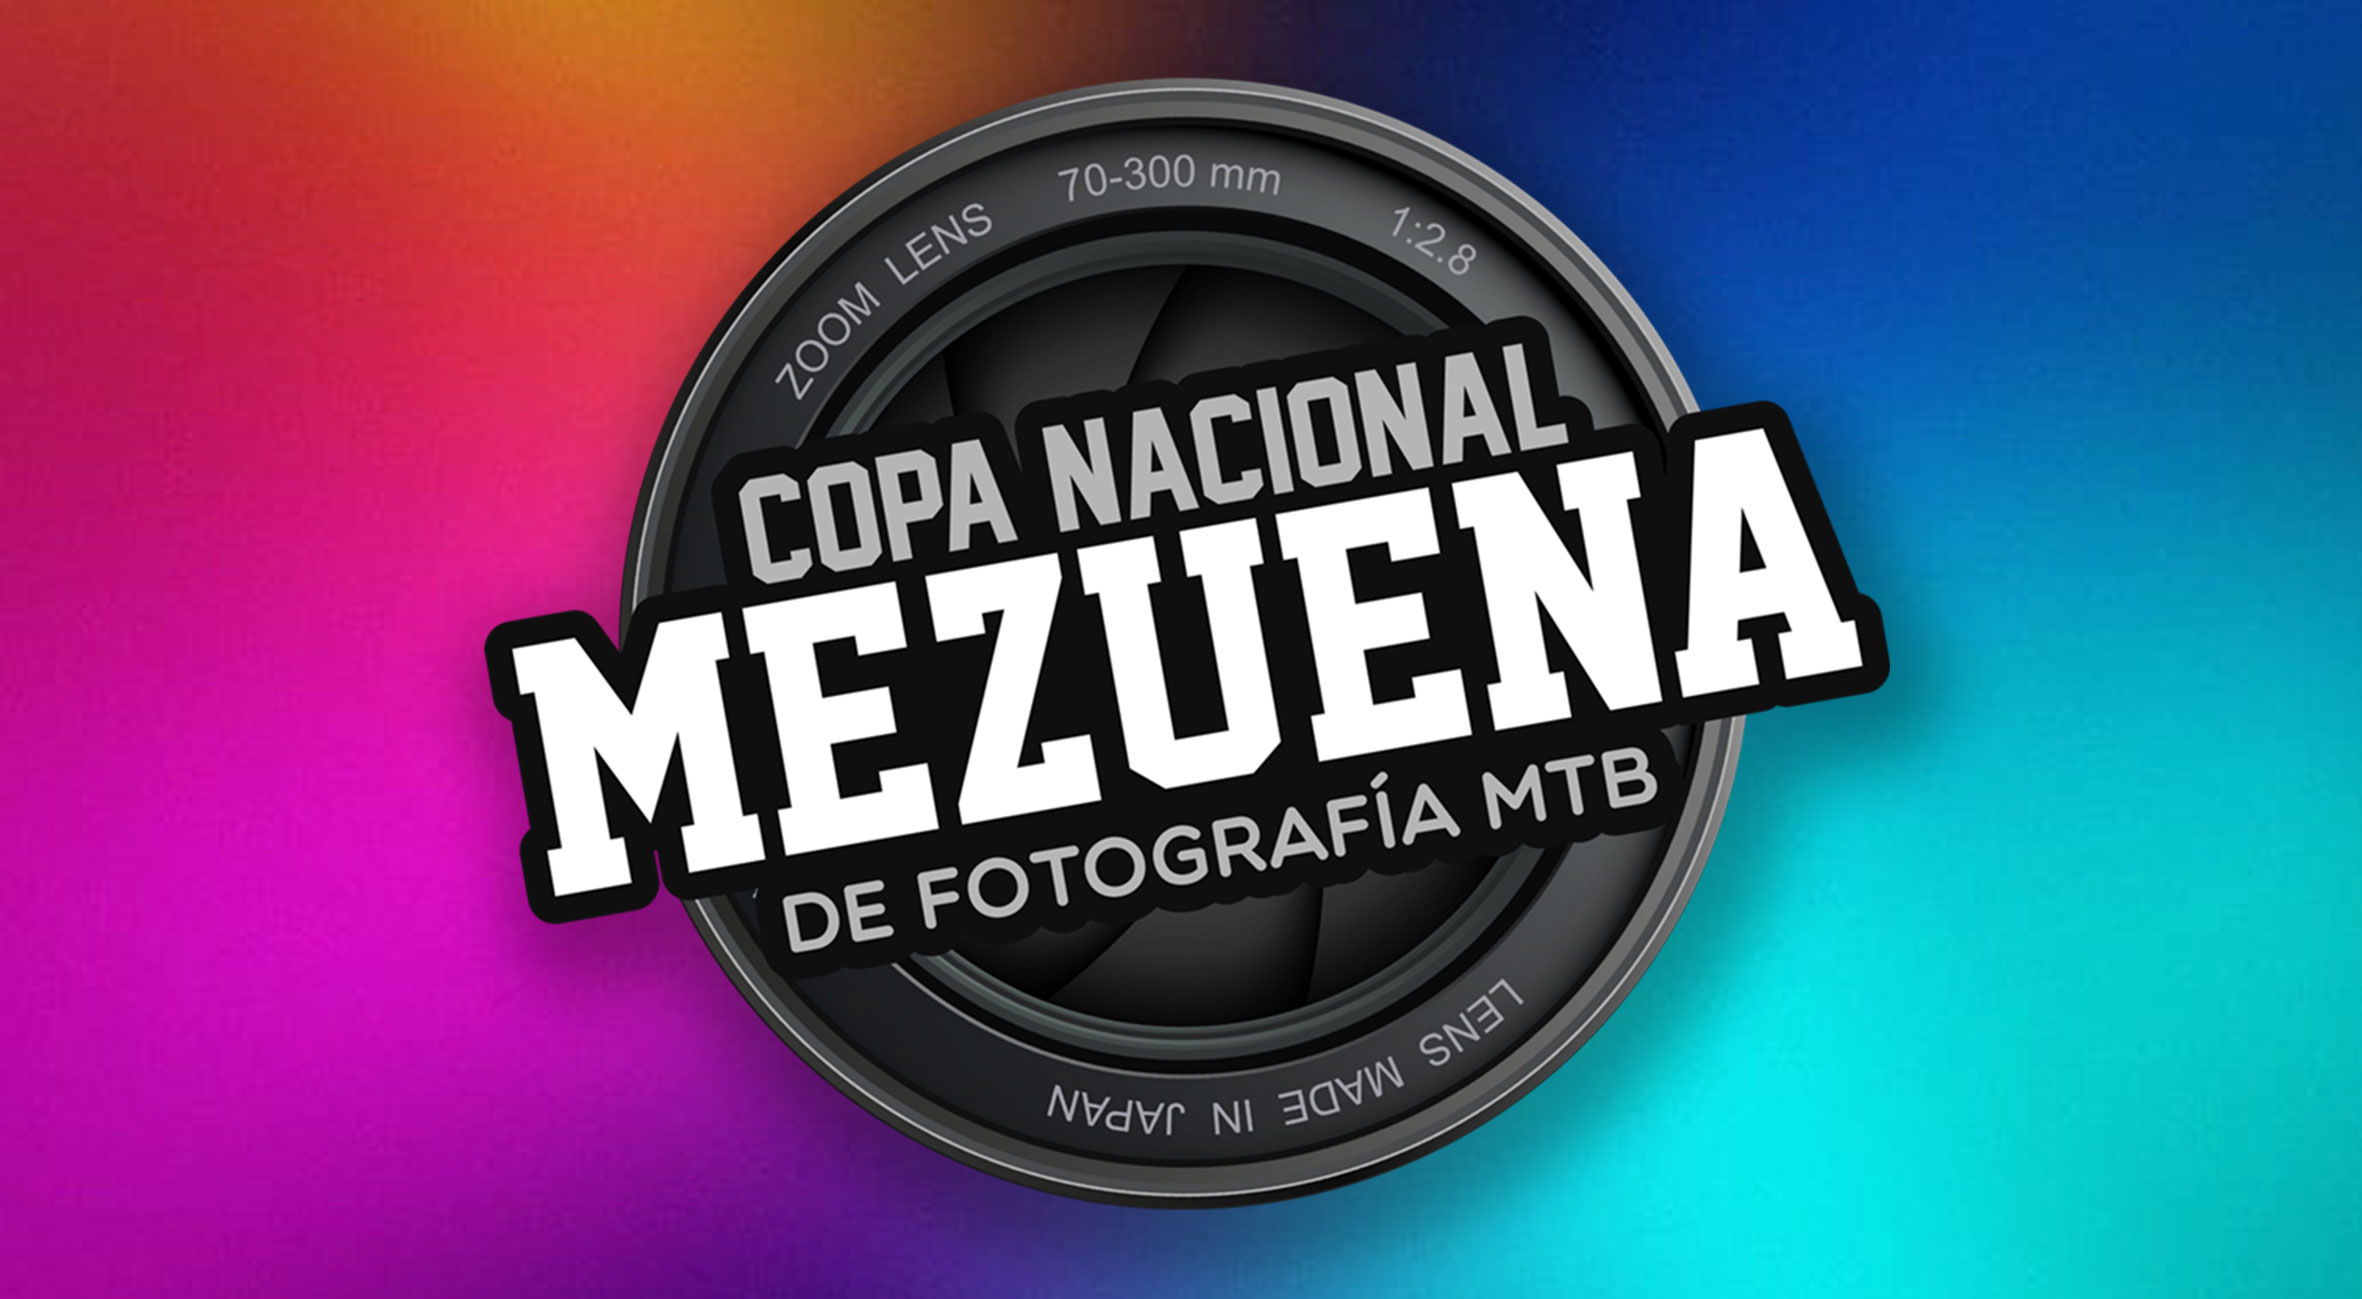 La Fundación Mezuena los invita a participar en la Copa Mezuena de fotografía!